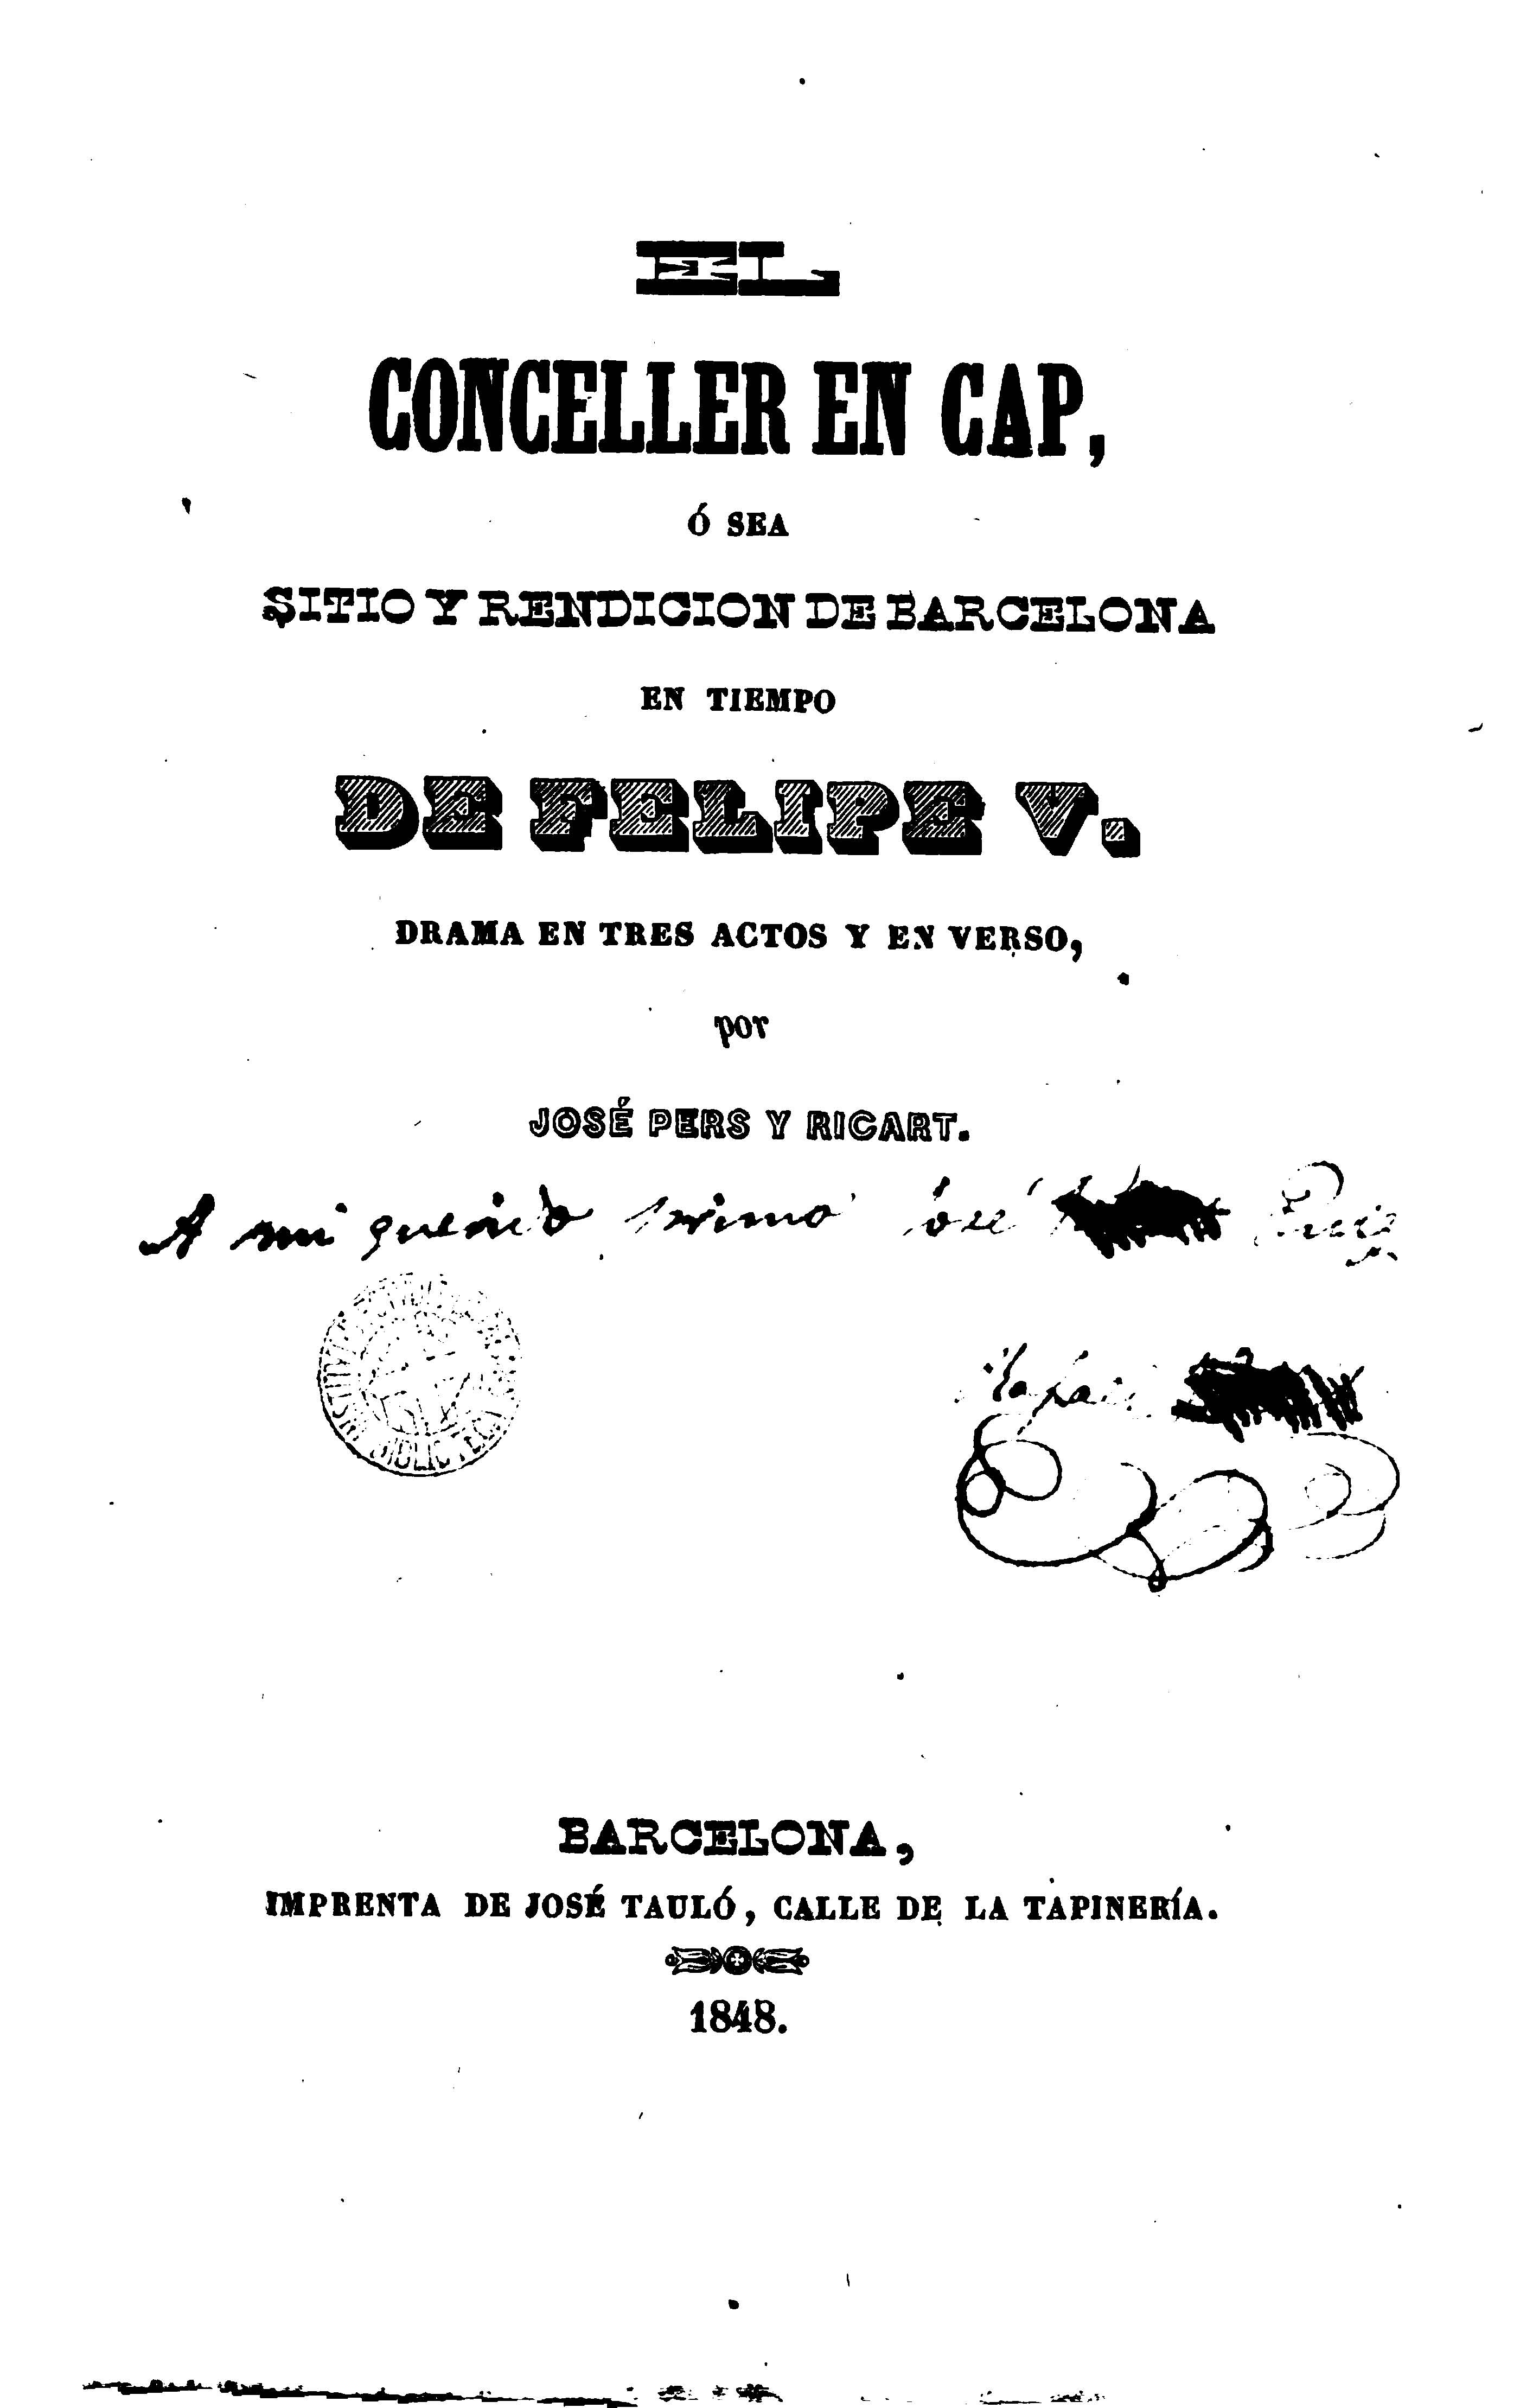 Lo conceller en cap, o sea, Sitio y rendición en Barcelona en tiempo de Felipe V / José Pers y Ricart. Barcelona: Imp. José Tauló, 1848.